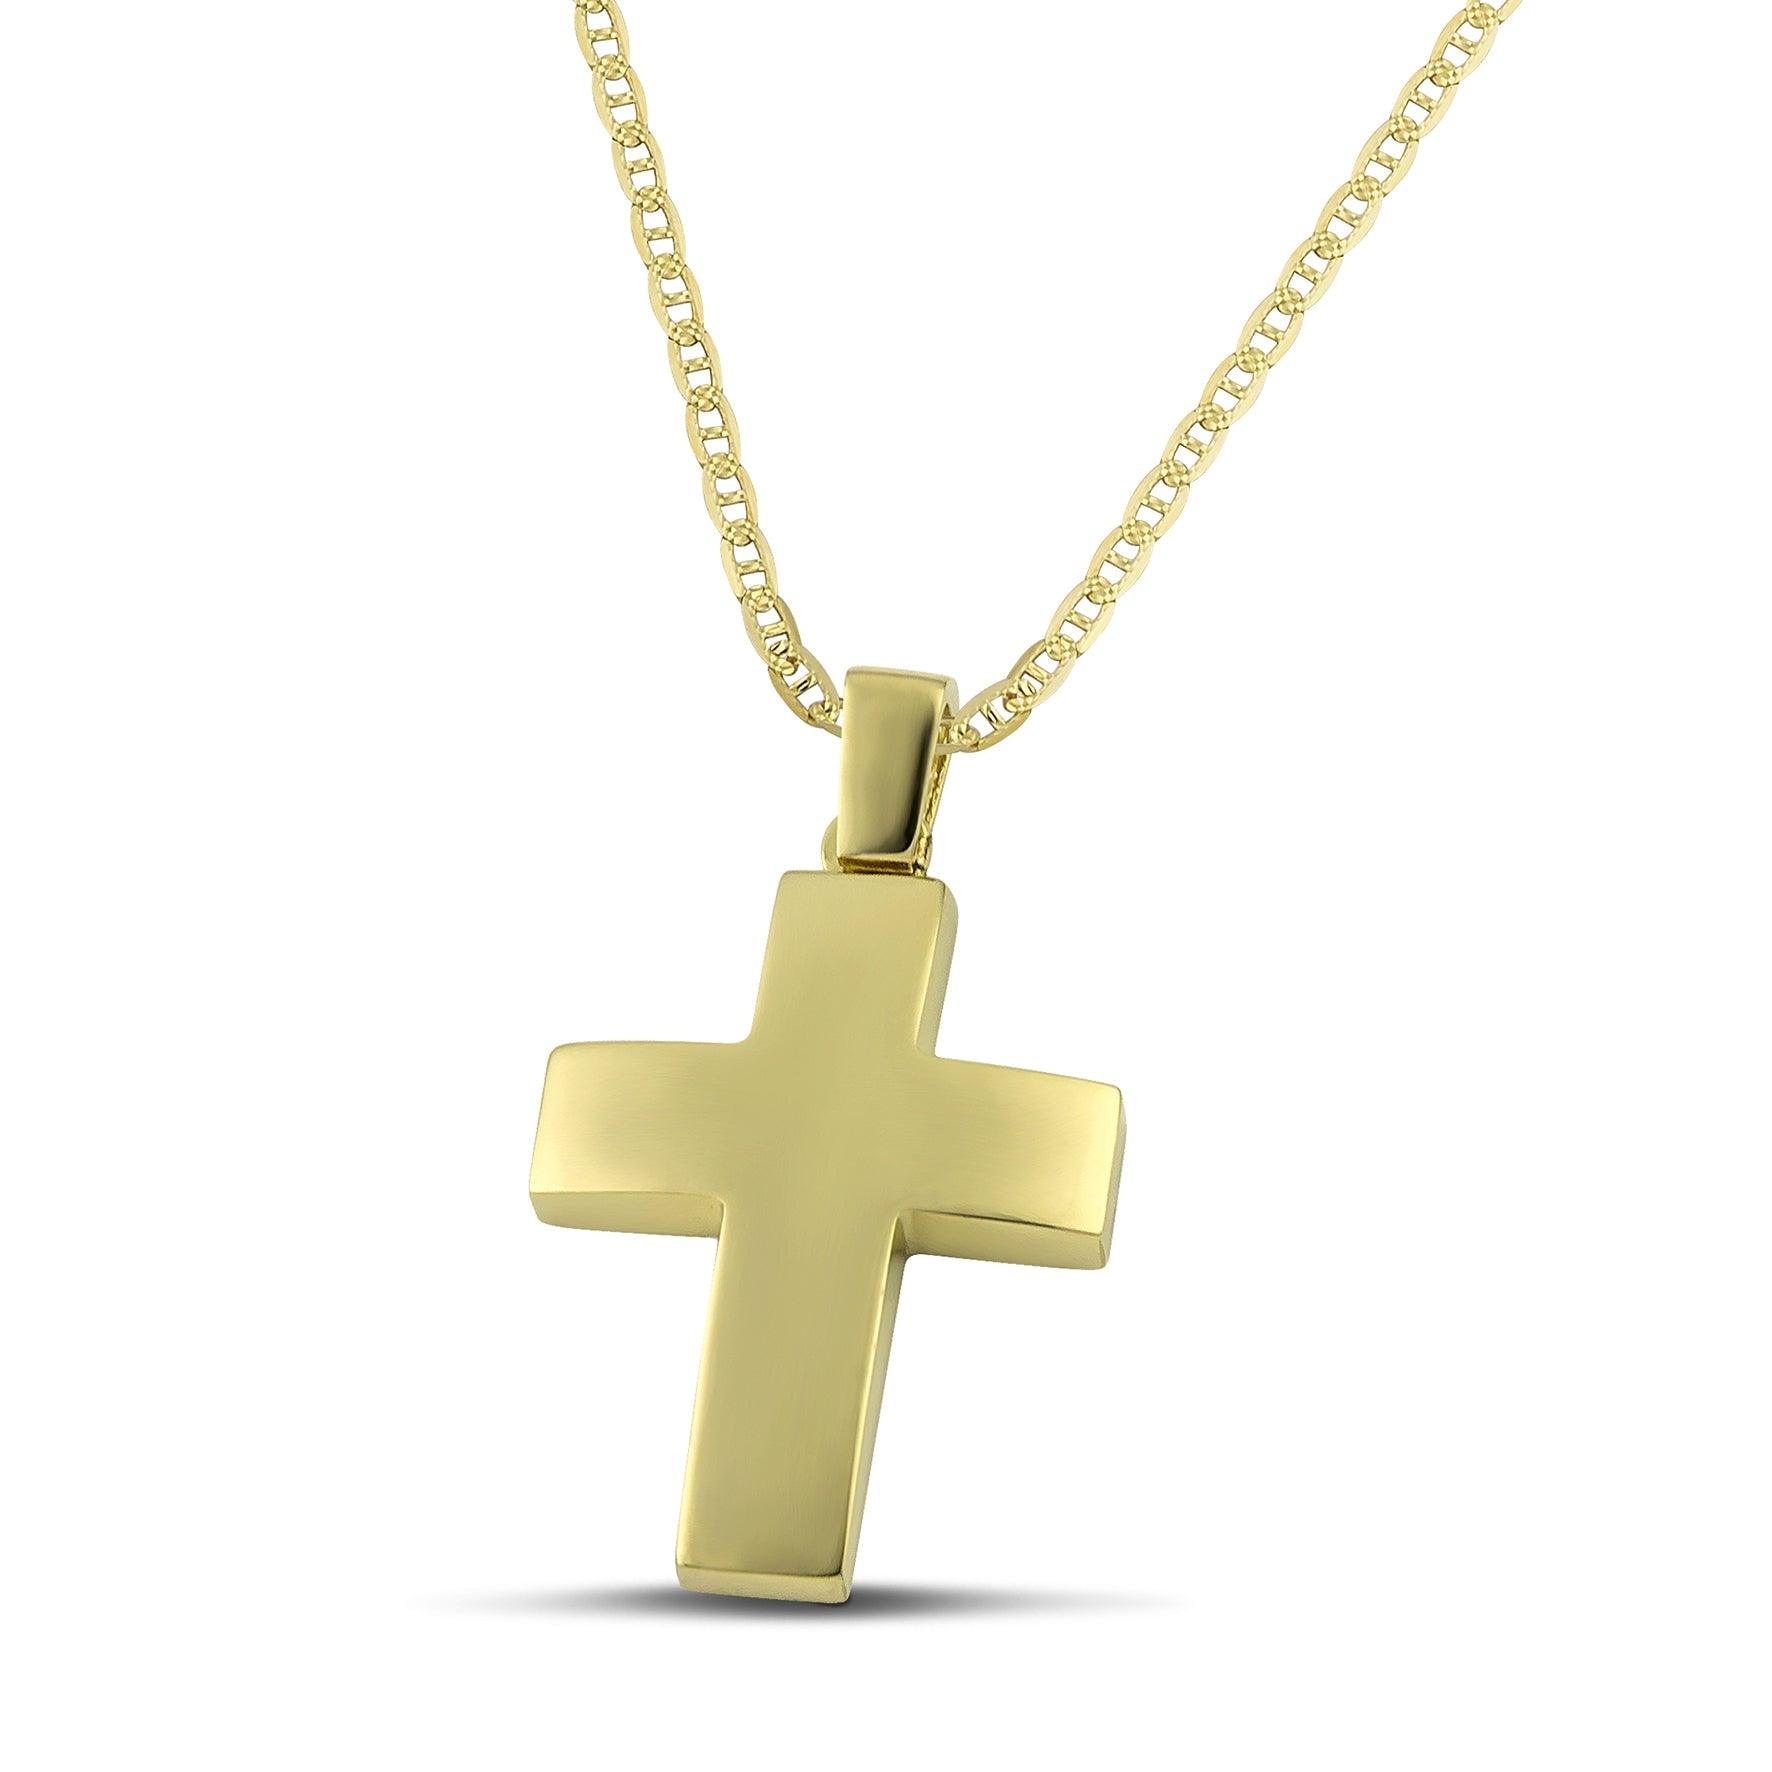 Αντρικός σταυρός διπλής όψης, από χρυσό Κ14 λουστράτος, με «θ» αλυσίδα. 